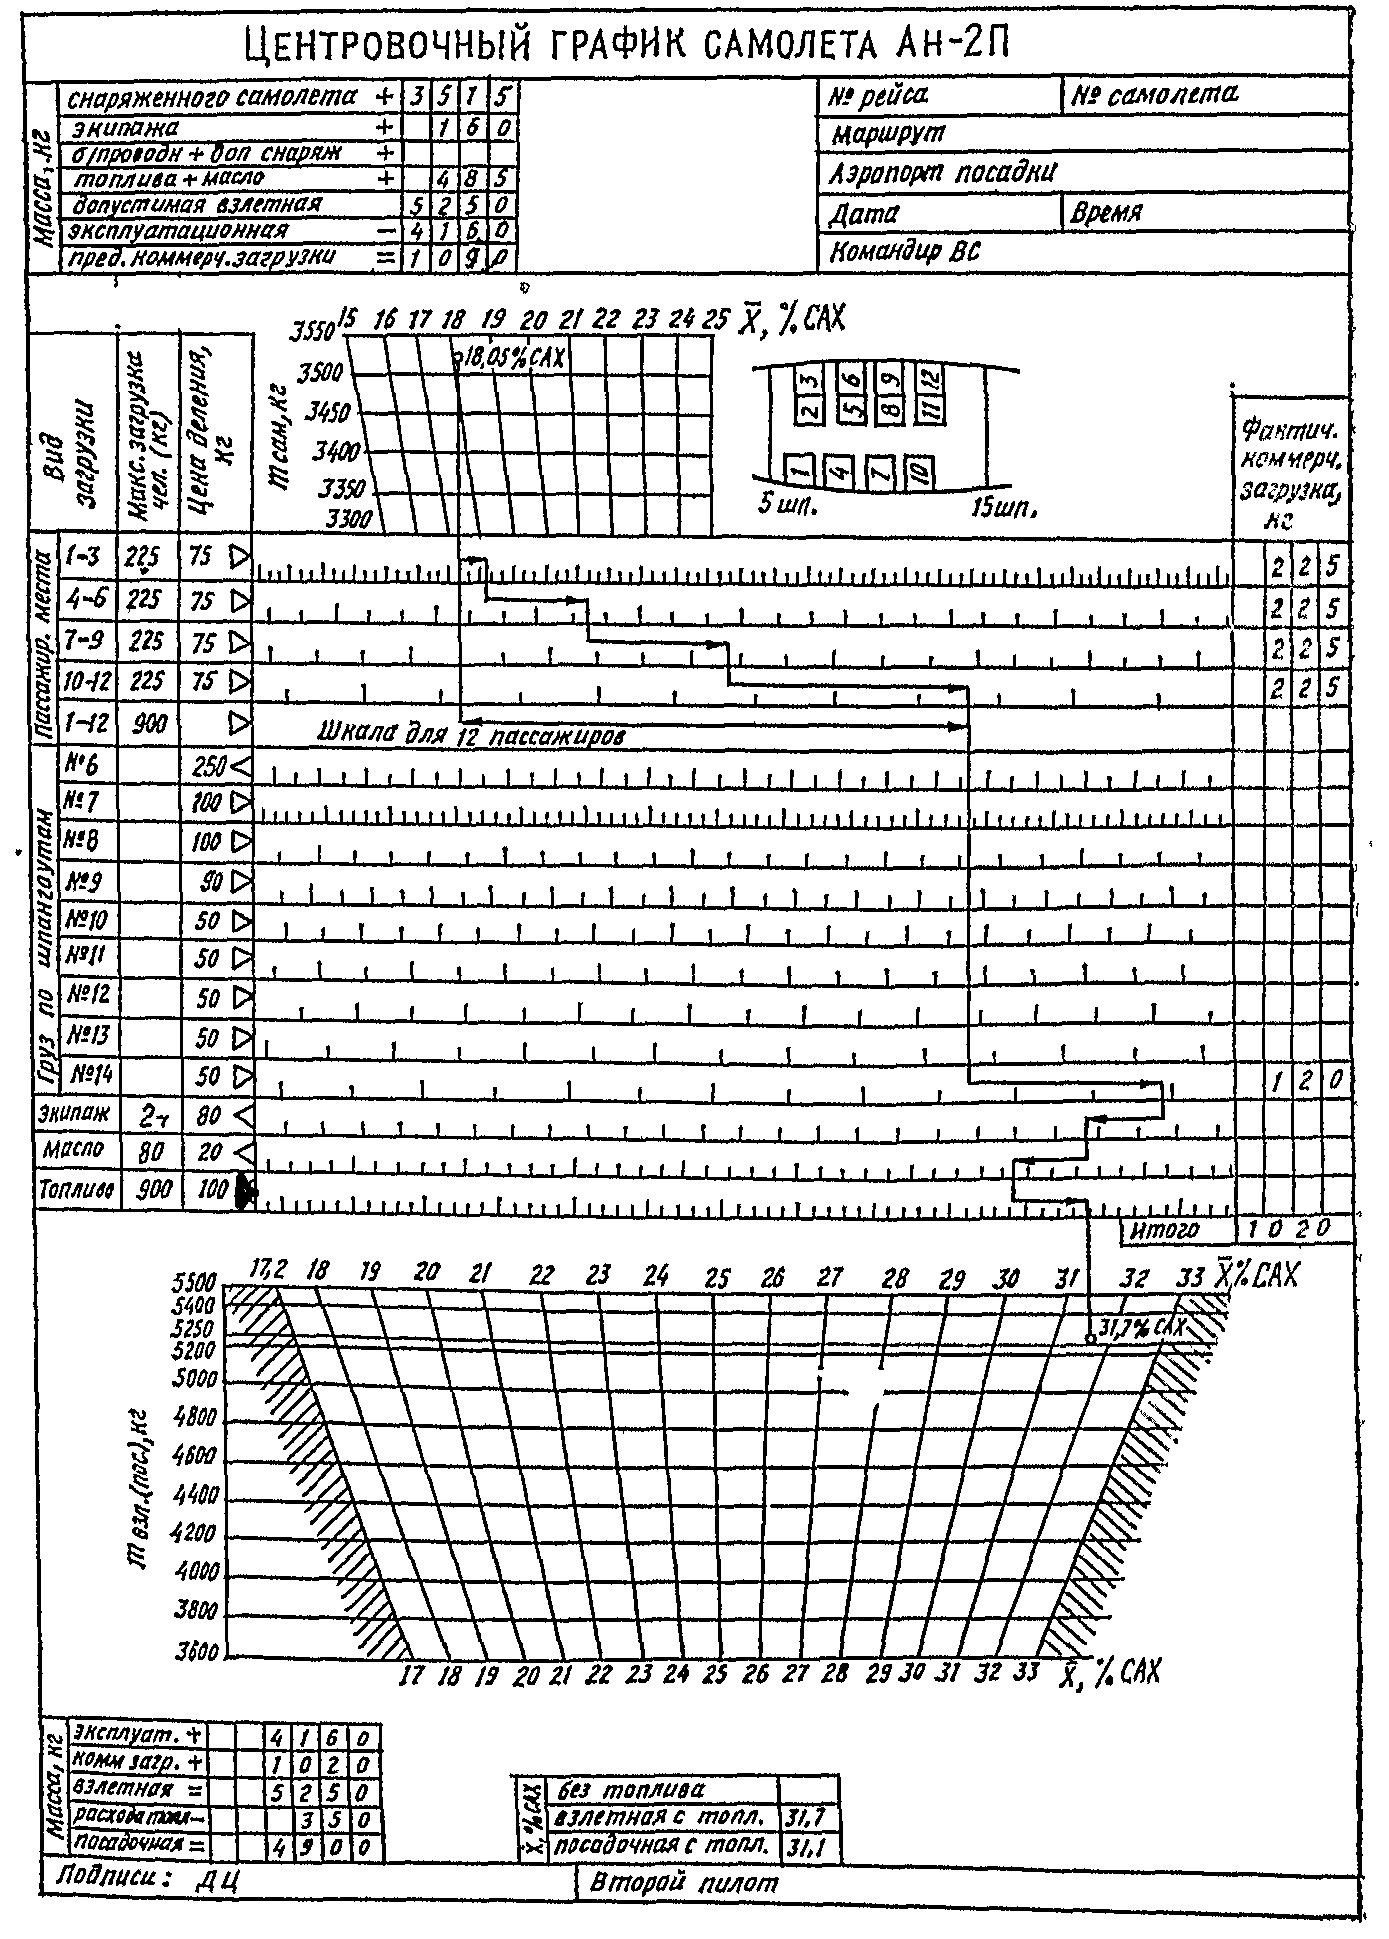 Центровочный график самолета Ан-2, оборудованного креслами которые расположены по полету